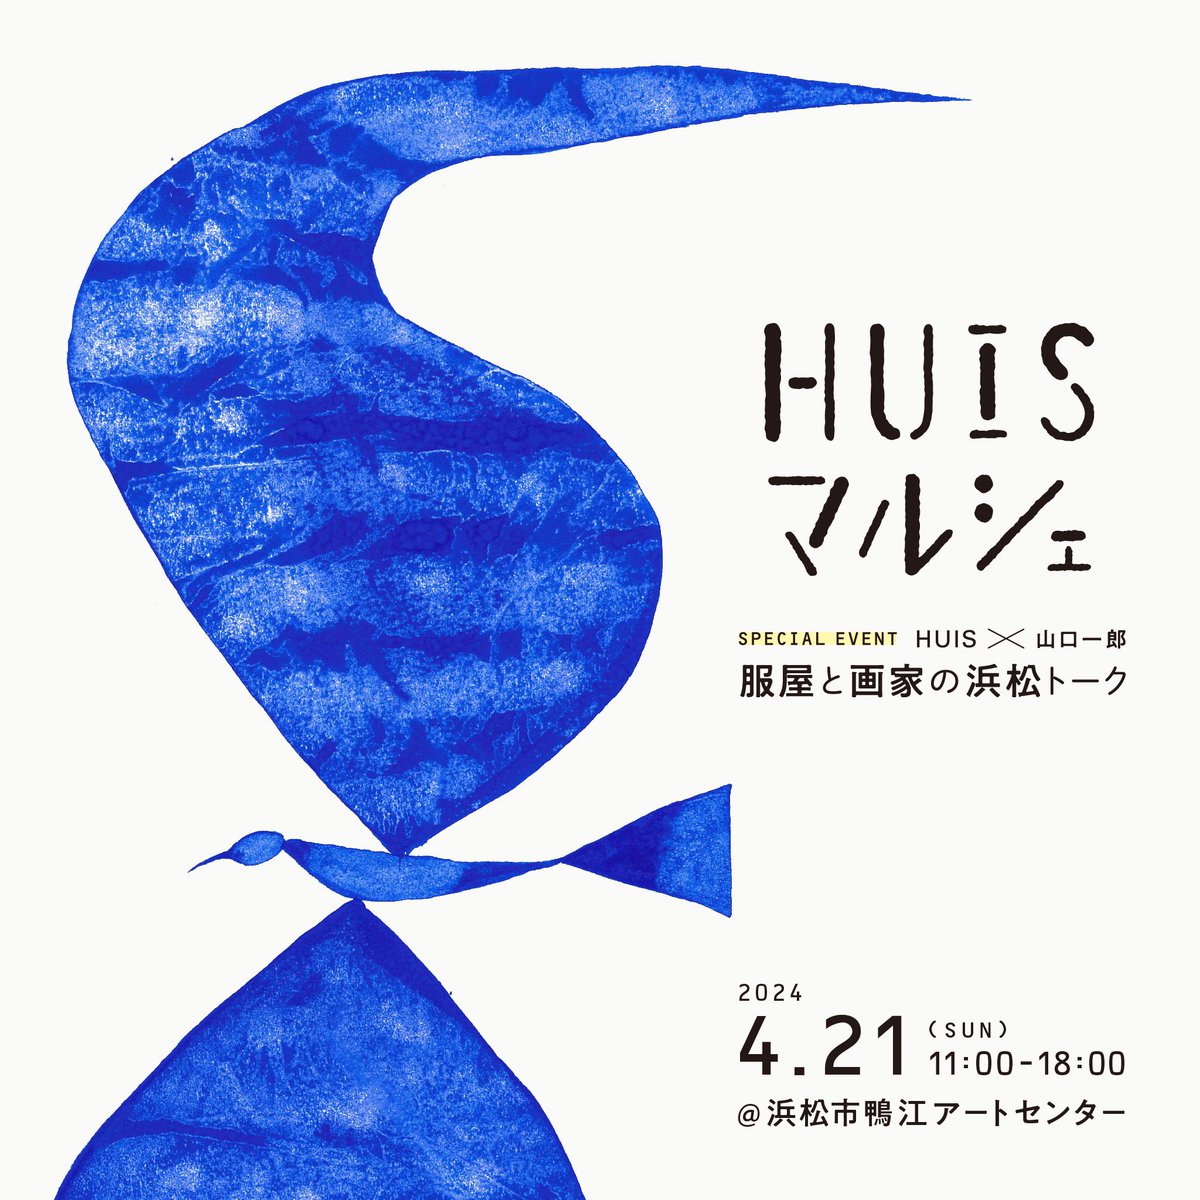 4月21日　静岡県浜松市にて 浜松のアパレルメーカー HUIS （ハウス ）さんが主催するマルシェがあります 山口一郎の絵の展示・販売（少しですが） します 15:00より HUISオーナーとのトークショーをします 先着にて受け付けています 詳しくは、HUISのHPで　♫ 1-huis.com